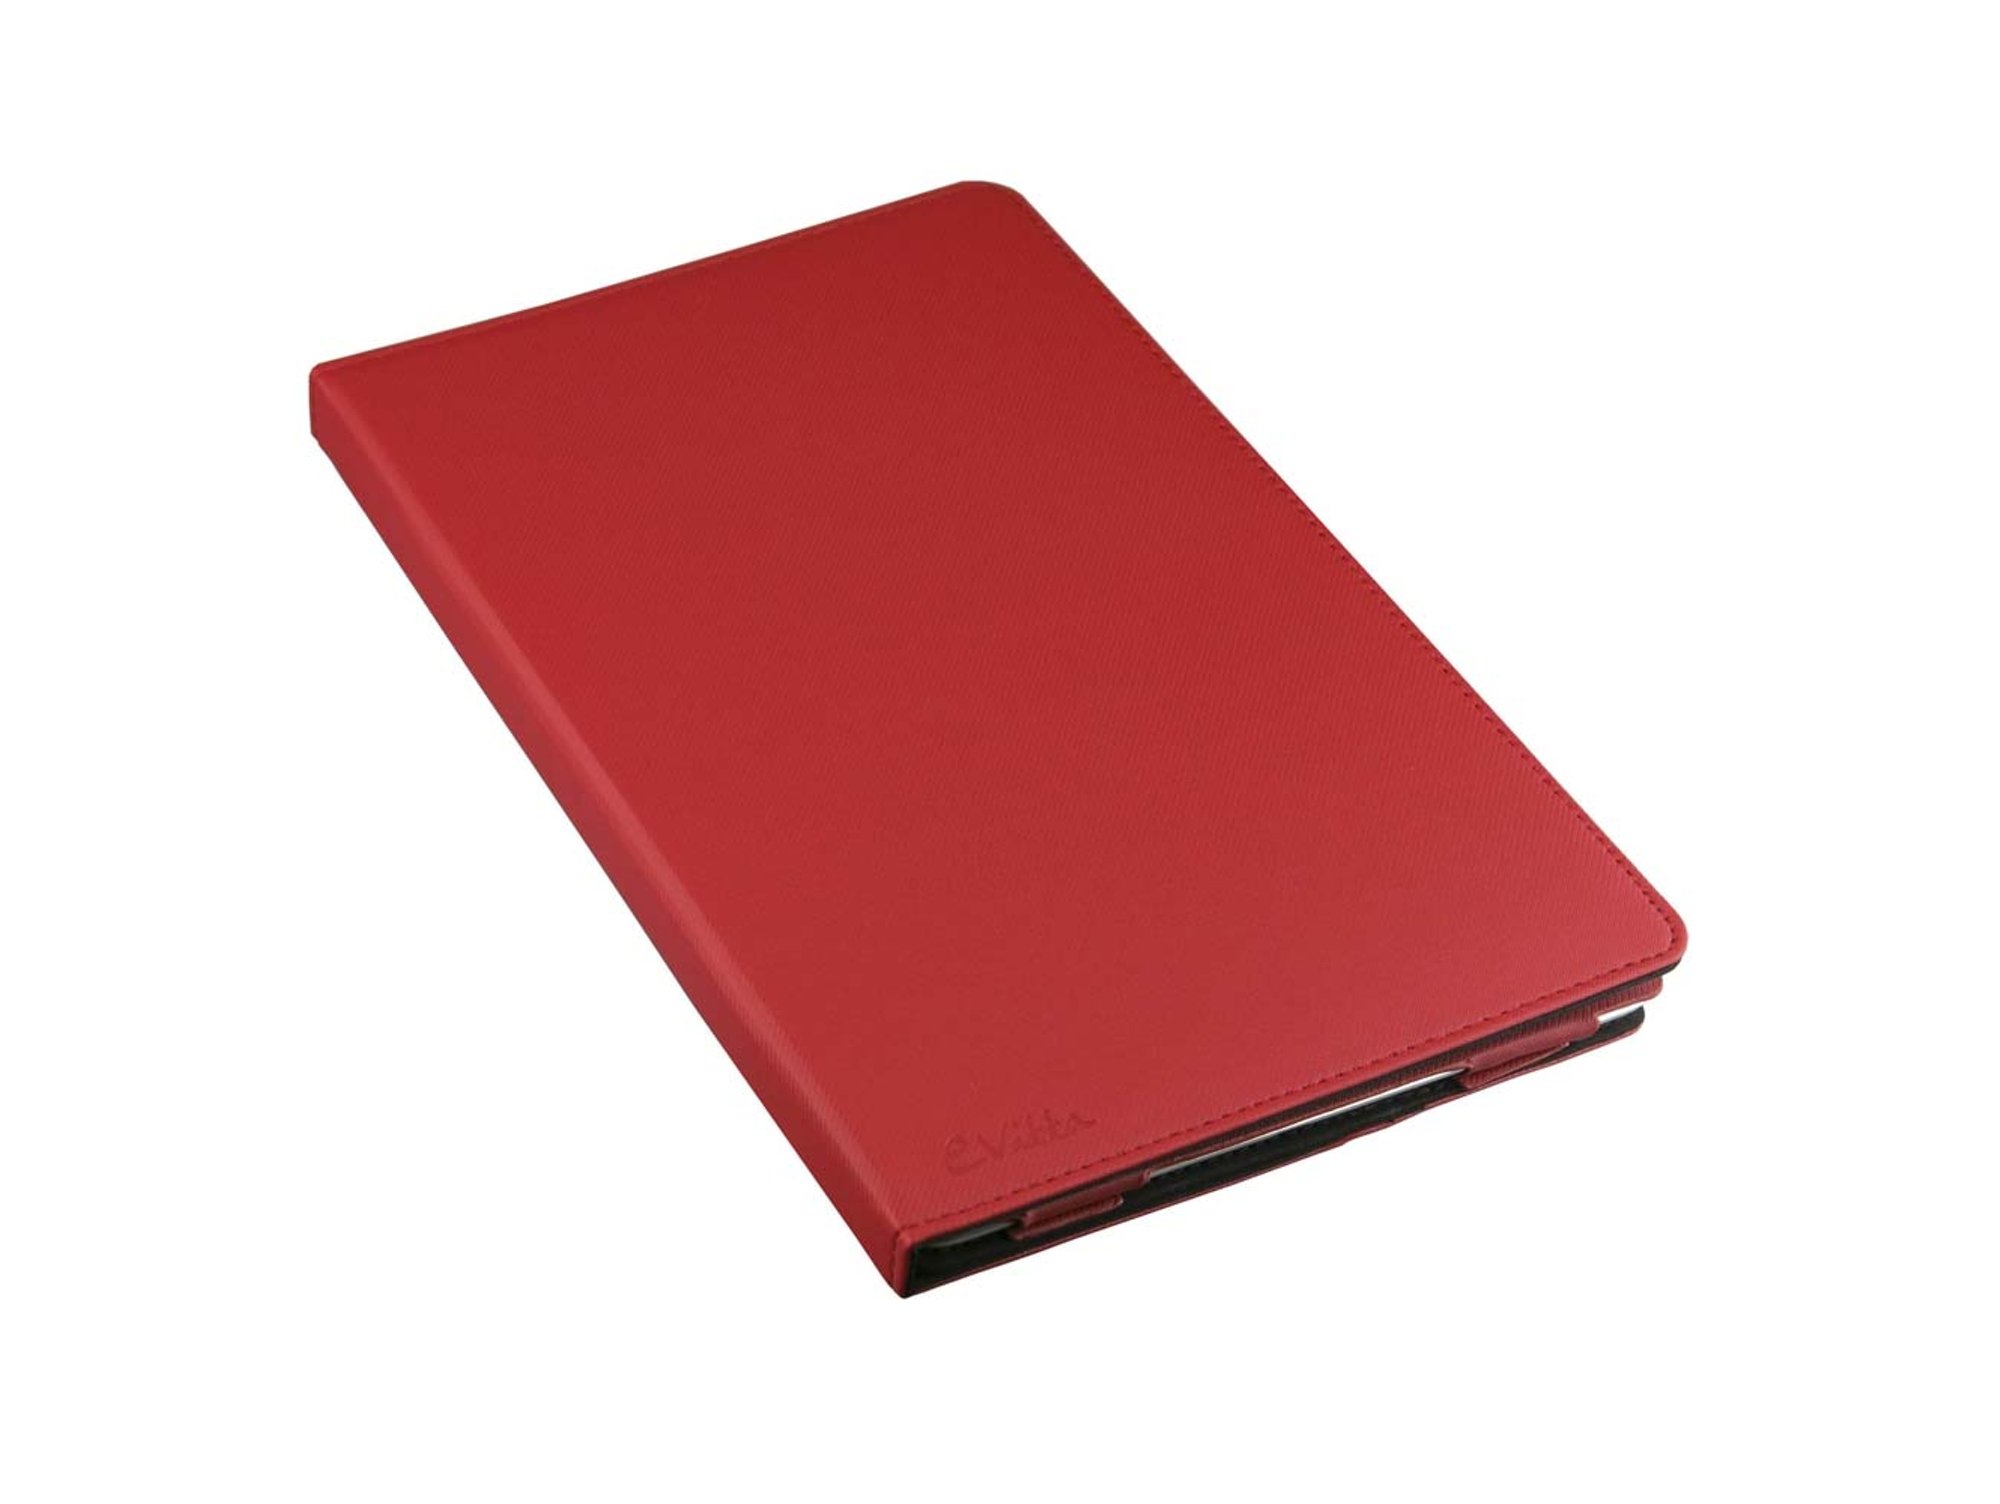 Funda Evitta Folio ipad air 9.7 rojo para de 97 pulgadas ipod 1 y 2 evip000801 246 12 290